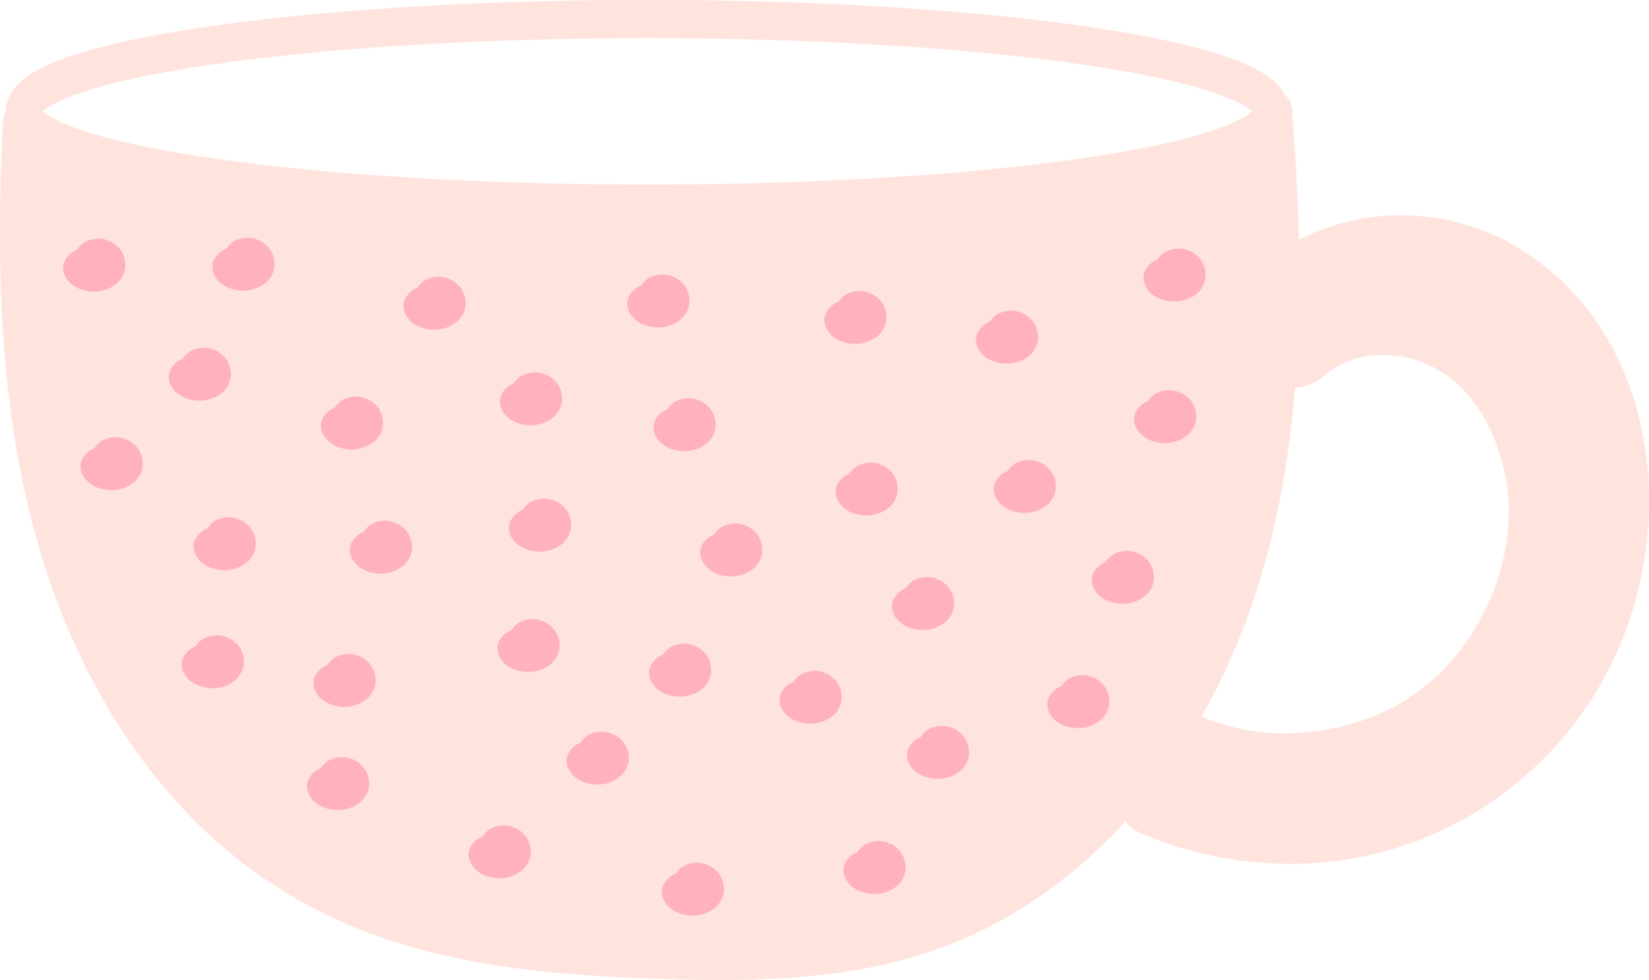 söt te eller kaffe kopp beskärning png